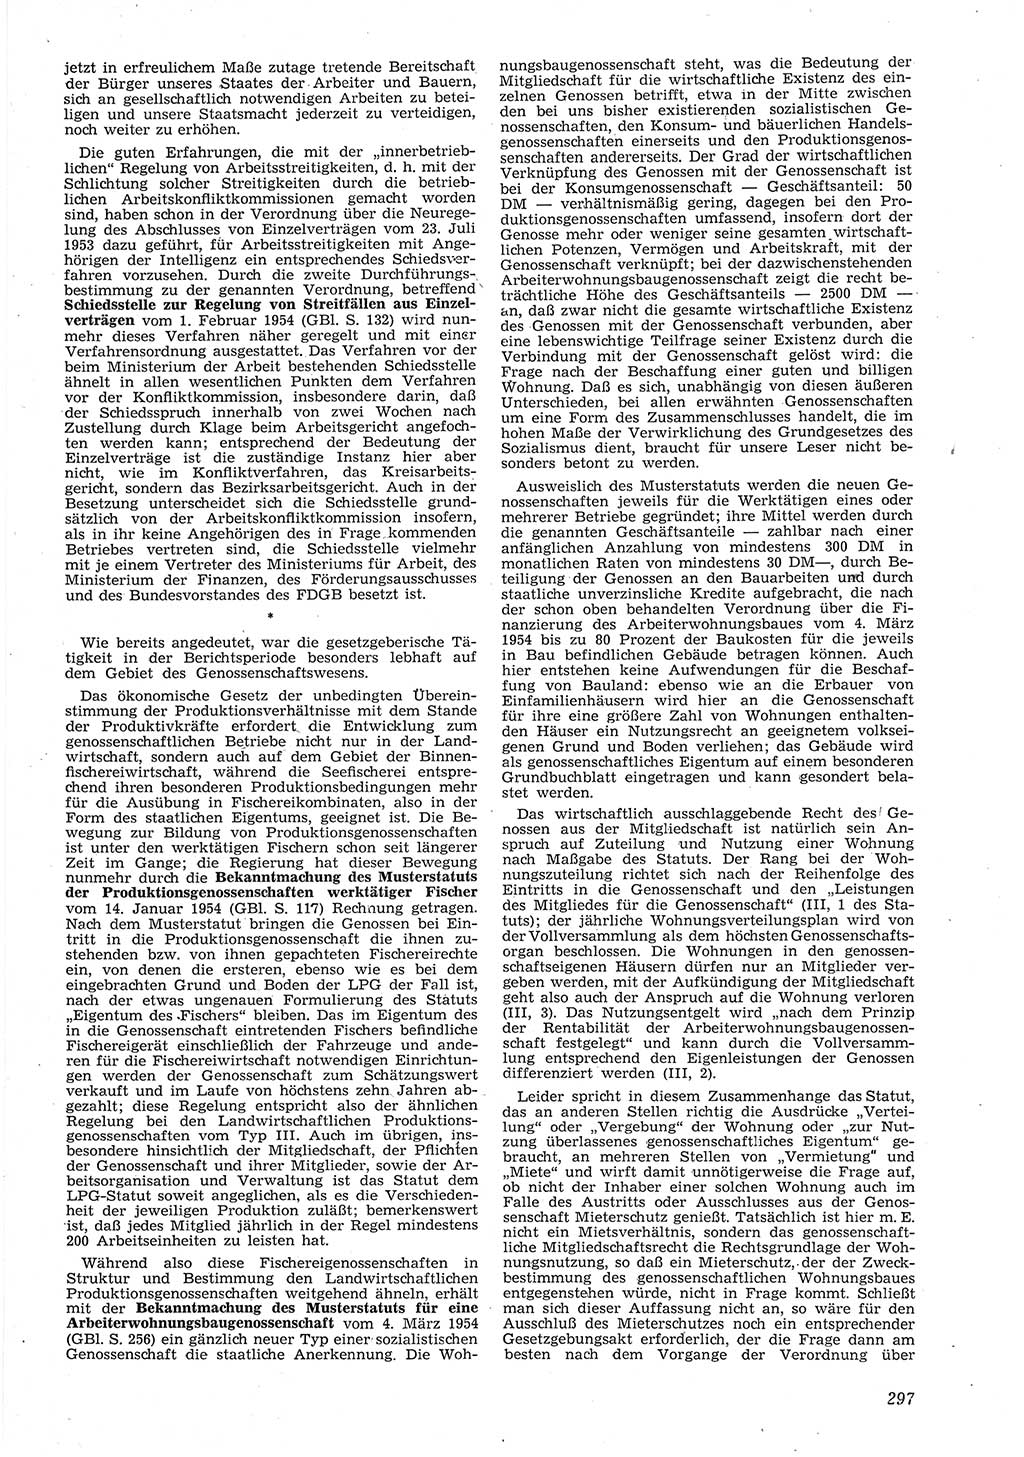 Neue Justiz (NJ), Zeitschrift für Recht und Rechtswissenschaft [Deutsche Demokratische Republik (DDR)], 8. Jahrgang 1954, Seite 297 (NJ DDR 1954, S. 297)